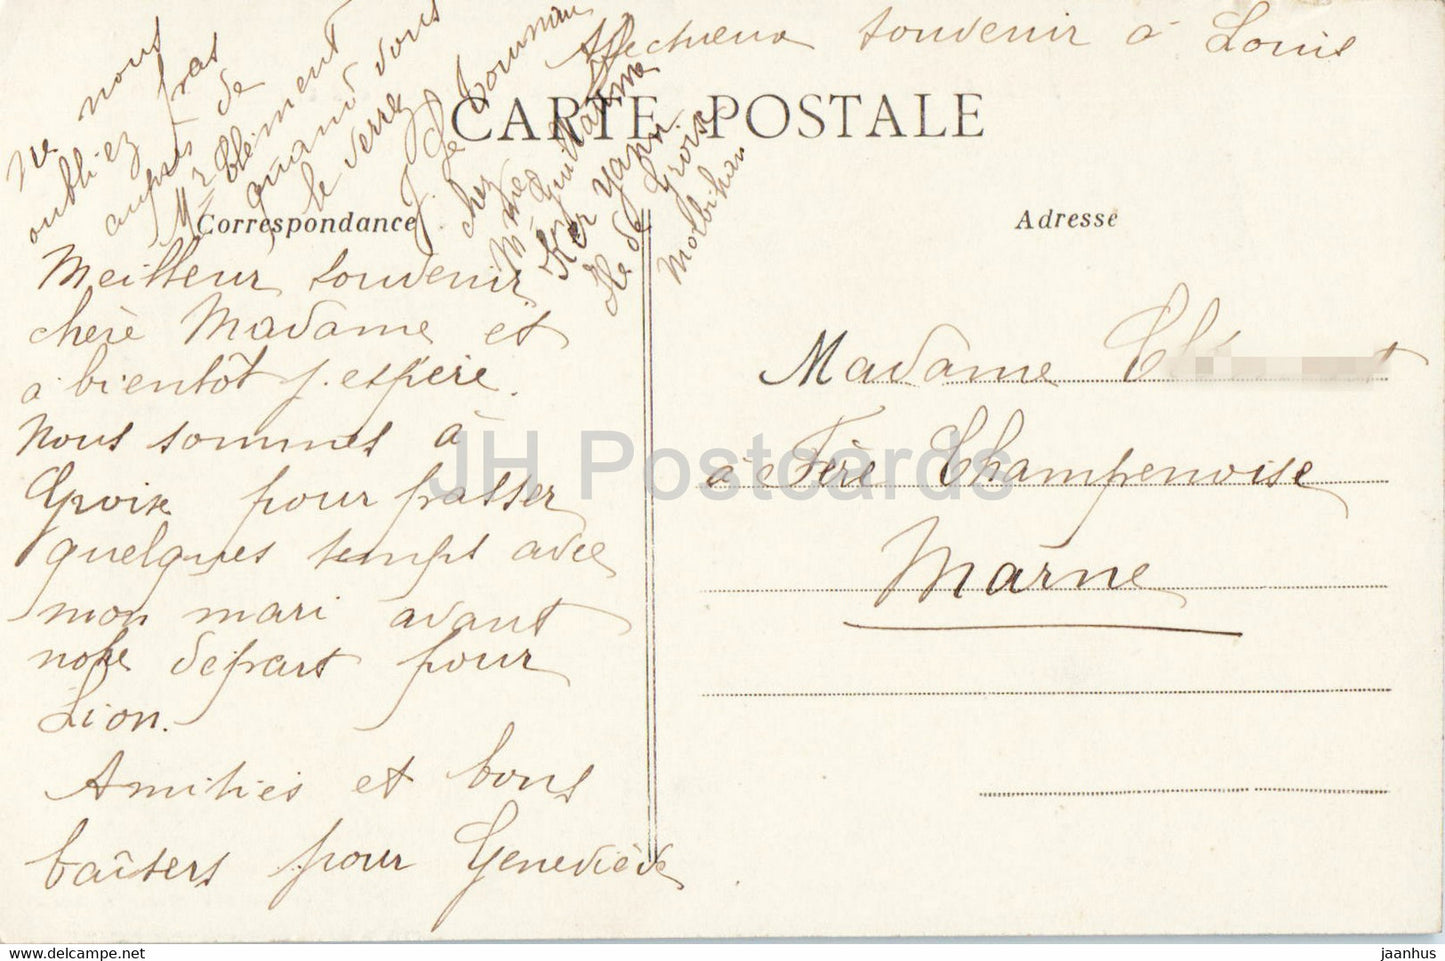 Ile de Groix - Rochers de Locmaria - La Pointe des Chats - 7124 - old postcard - France - used